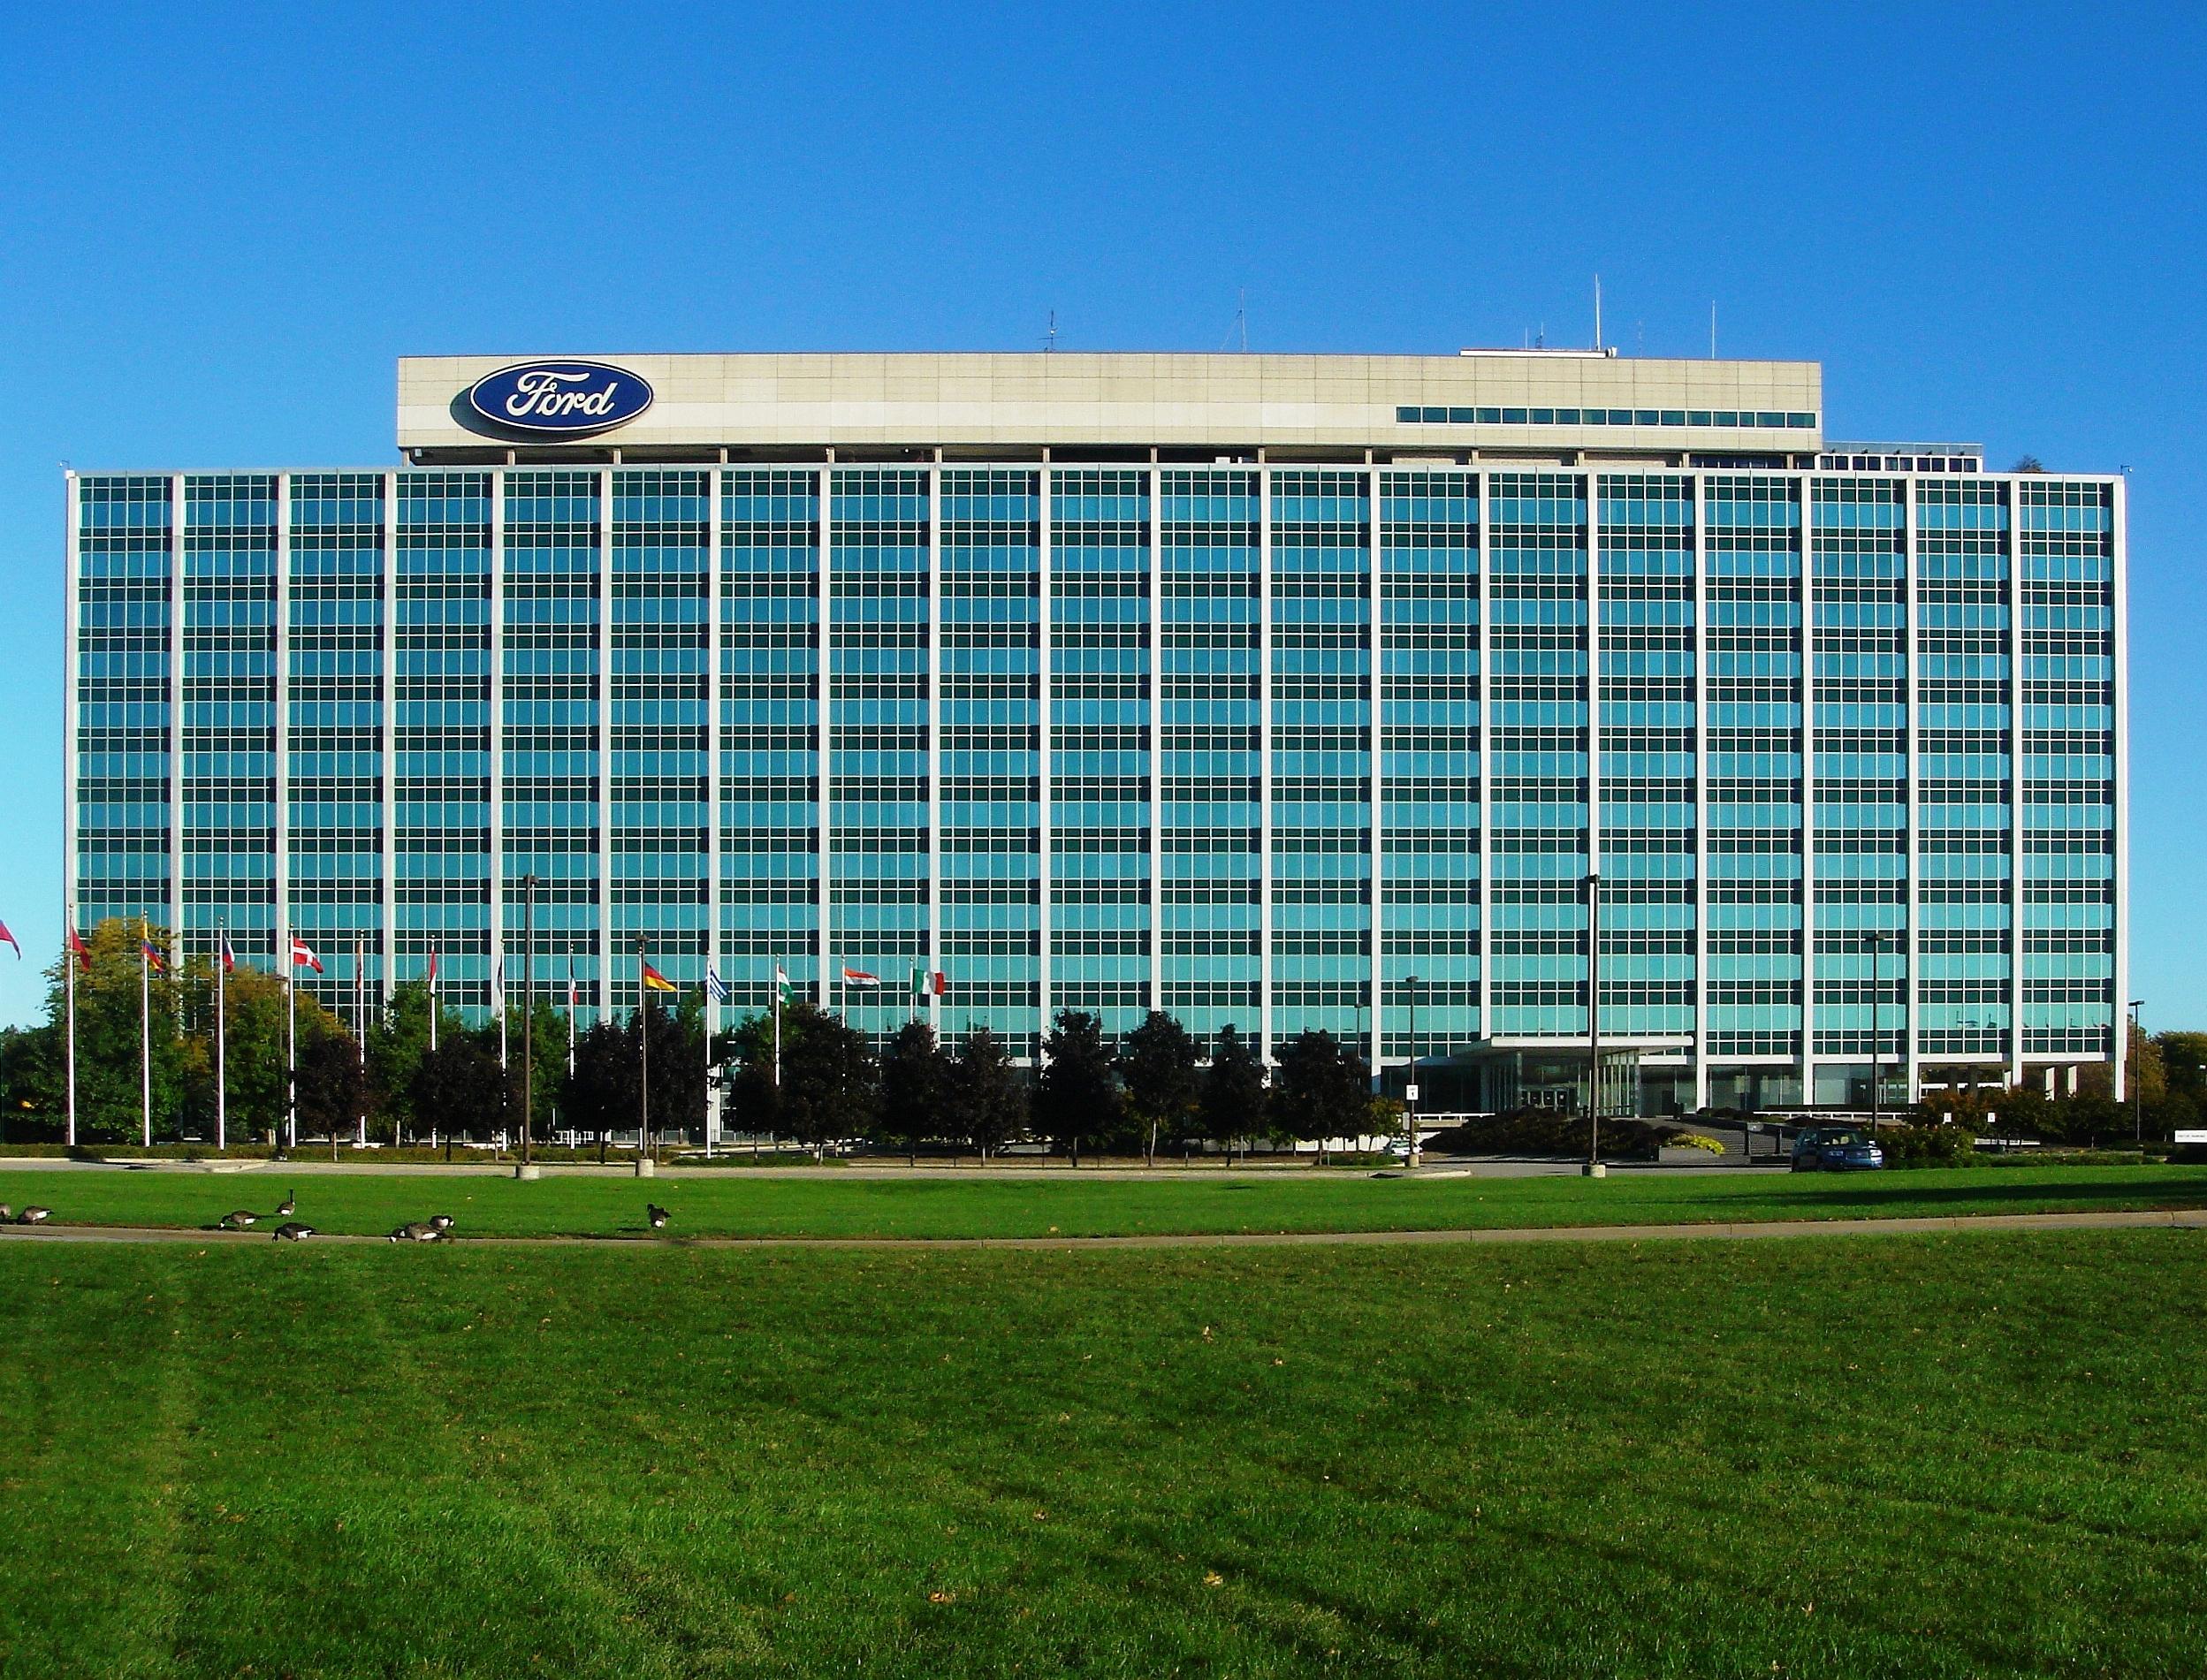 ΗΠΑ: Η Ford κατασκευάζει 50.000 αναπνευστήρες – Μπορεί να παράγει 30.000 αναπνευστήρες κάθε μήνα